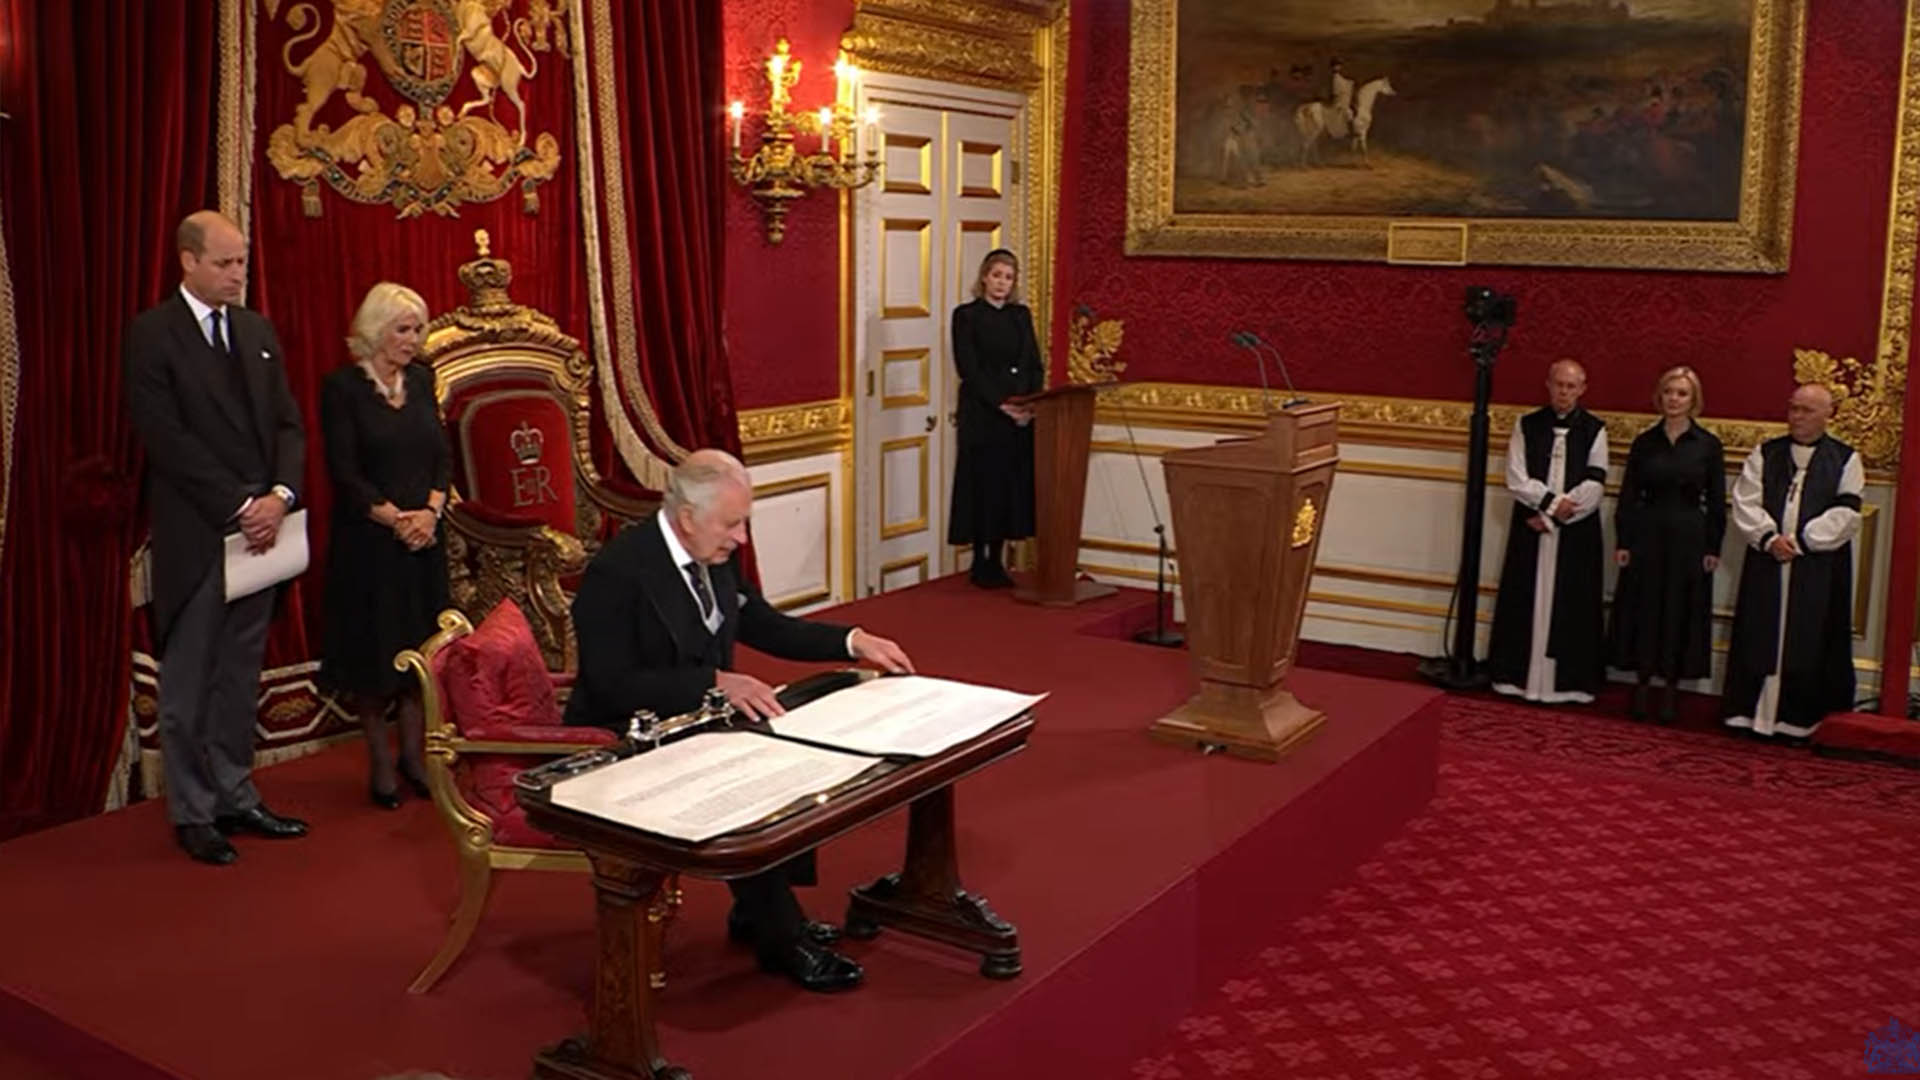 Cerimônia de proclamação do Rei Charles III - Crédito da imagem: Reprodução / YouTube The Royal Family (transmissão ao vivo)